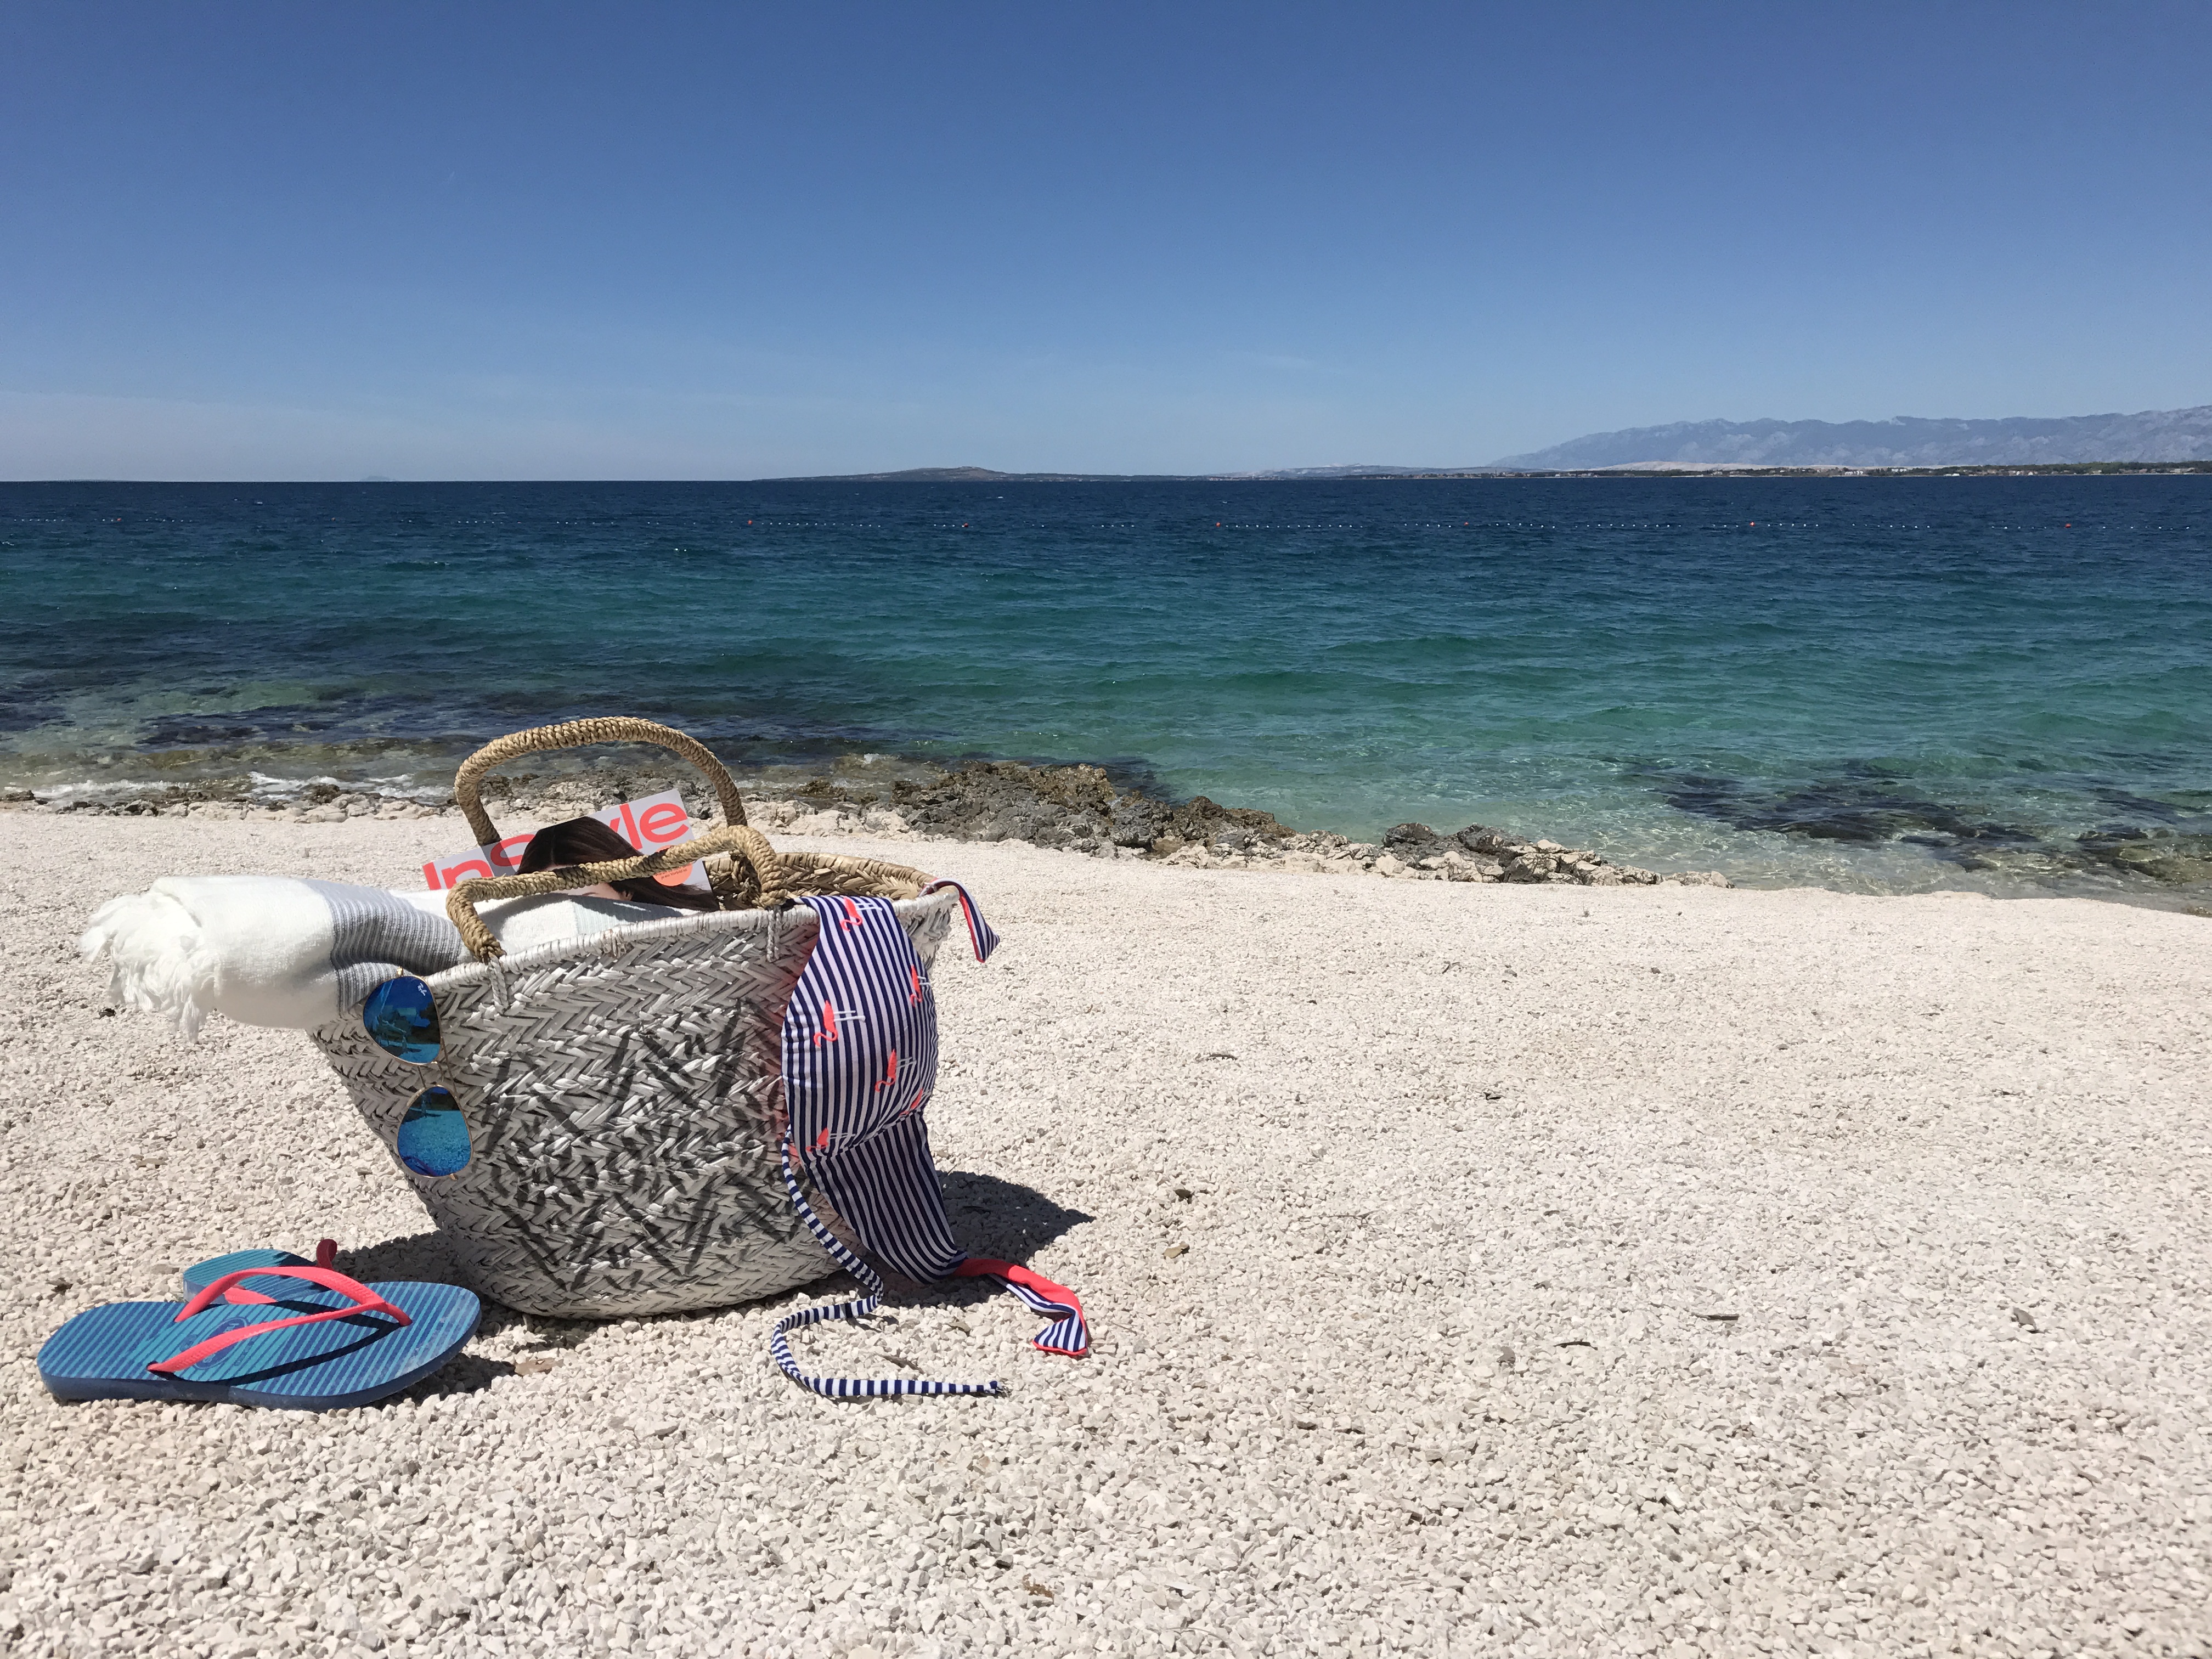 Warum Kroatien? – 5 Gründe für einen traumhaften Urlaub